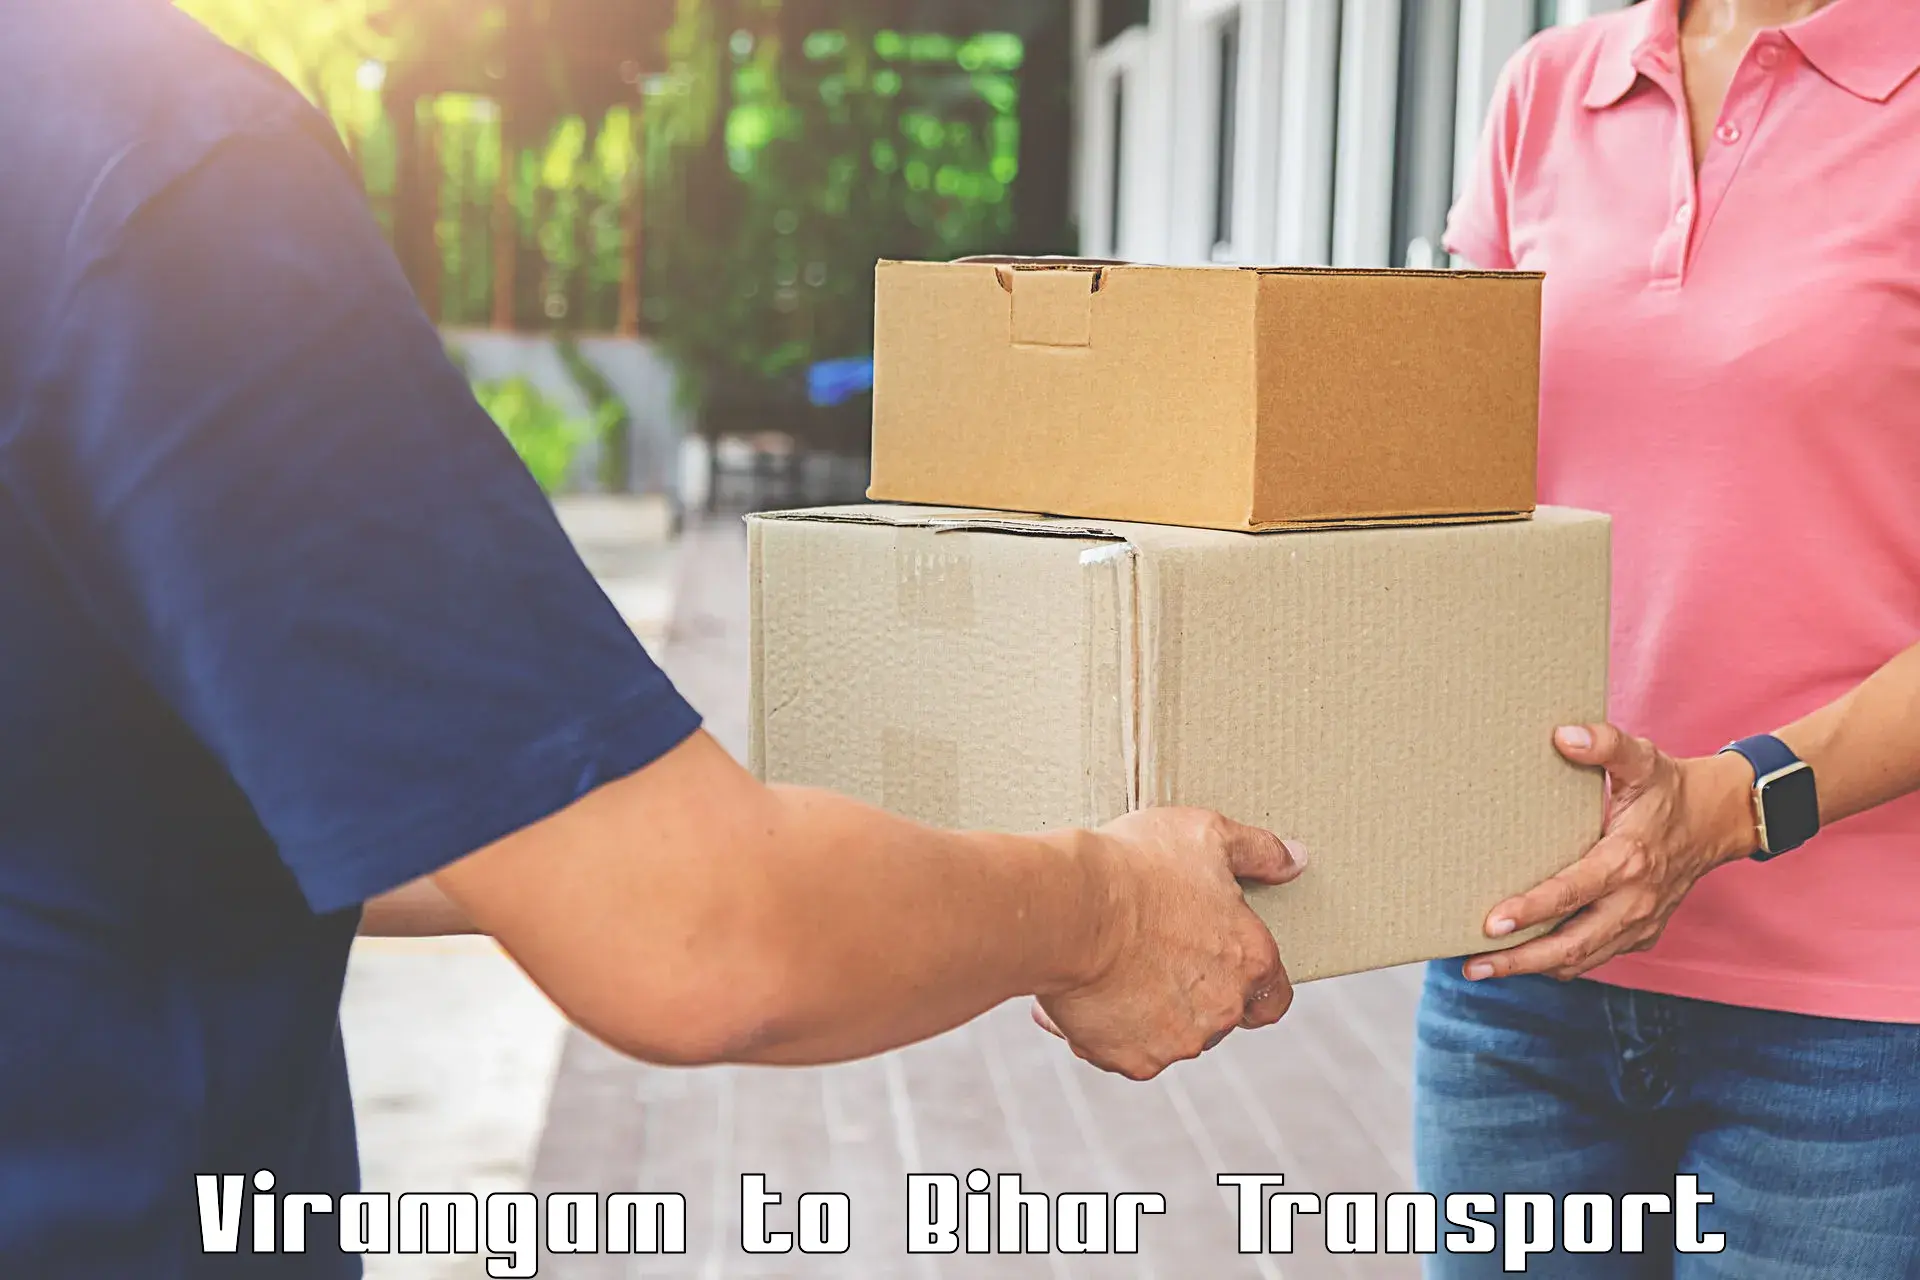 Sending bike to another city Viramgam to Bhagalpur